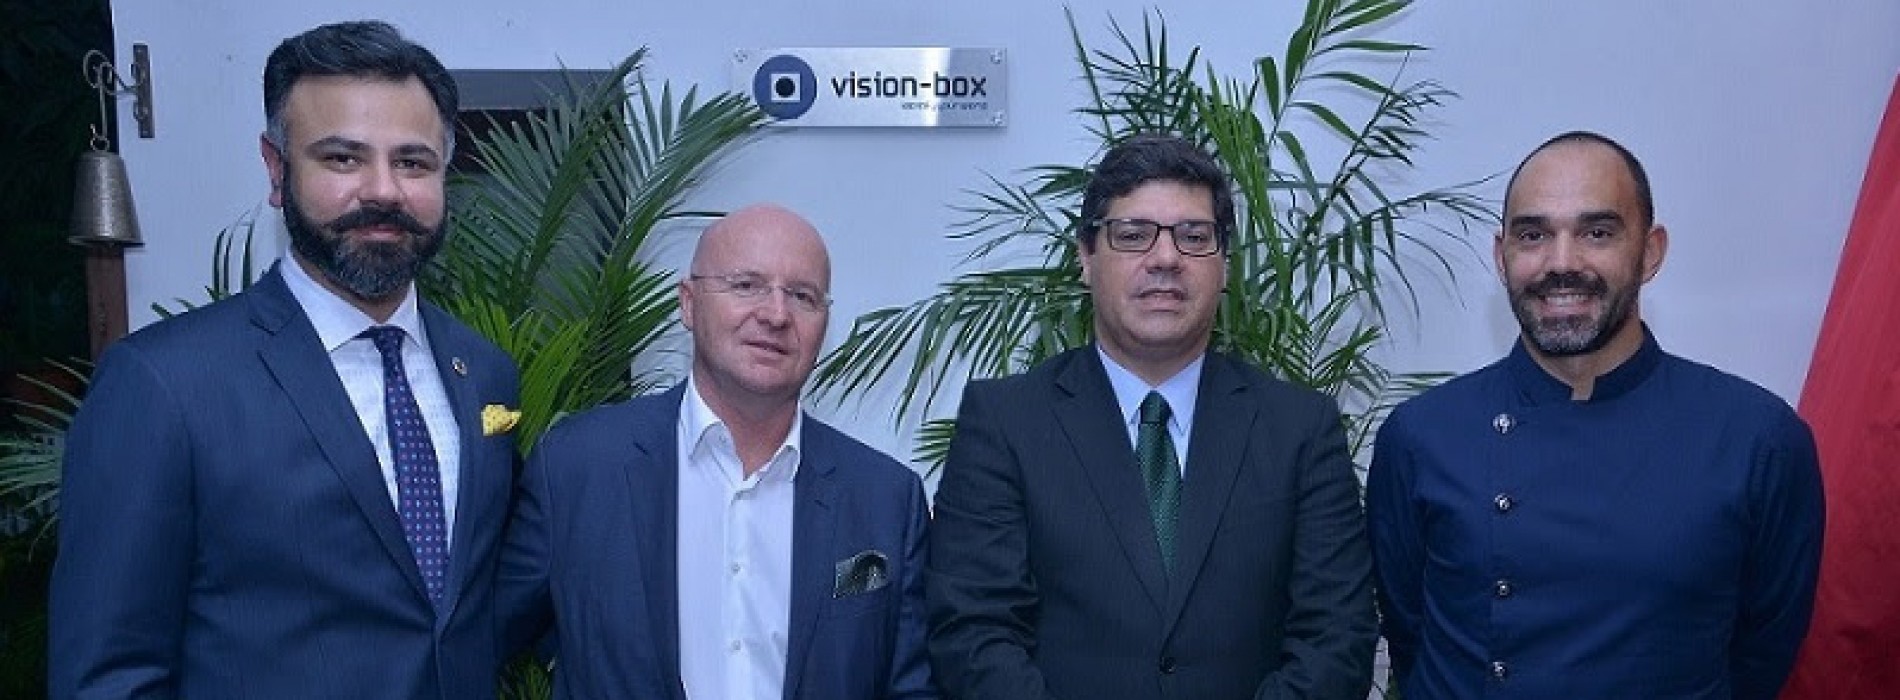 Vision-Box inaugurates office in New Delhi